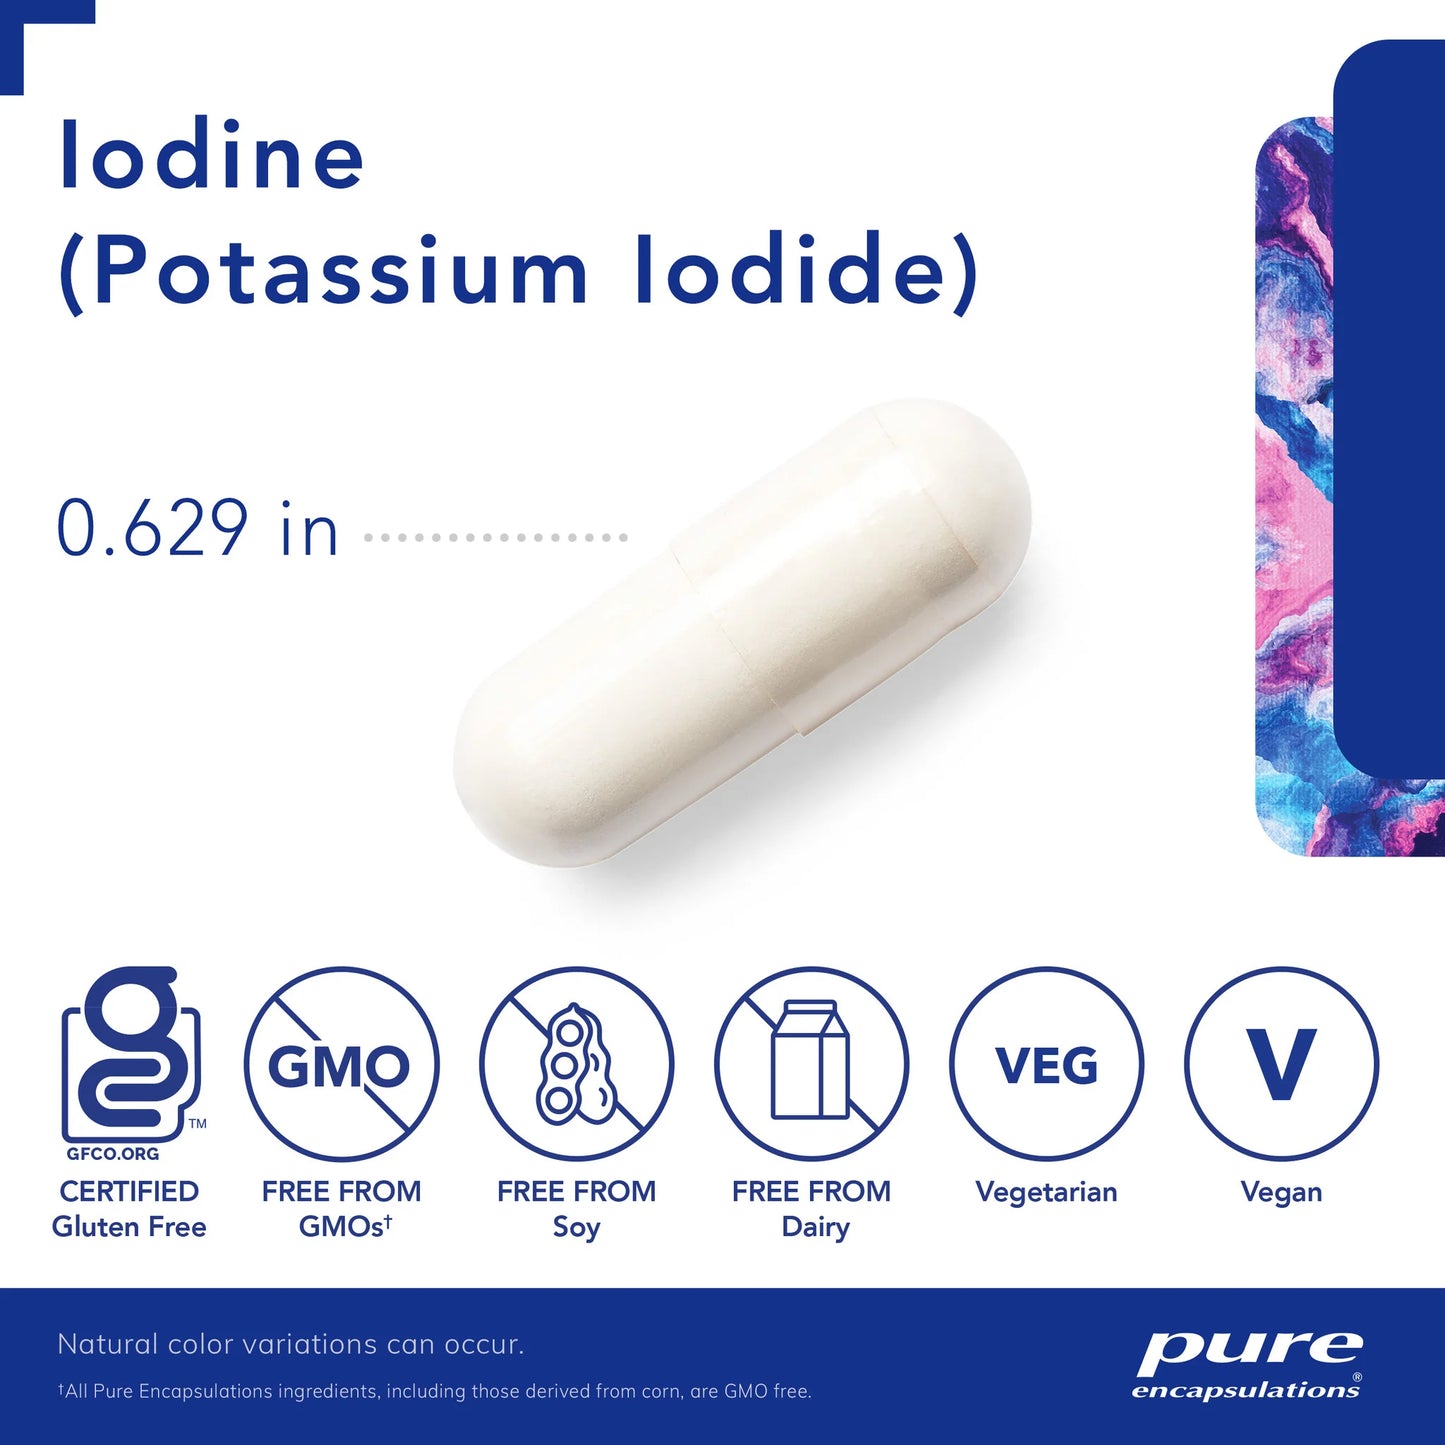 Pure Encapsulations - Iodine (potassium iodide) 120's